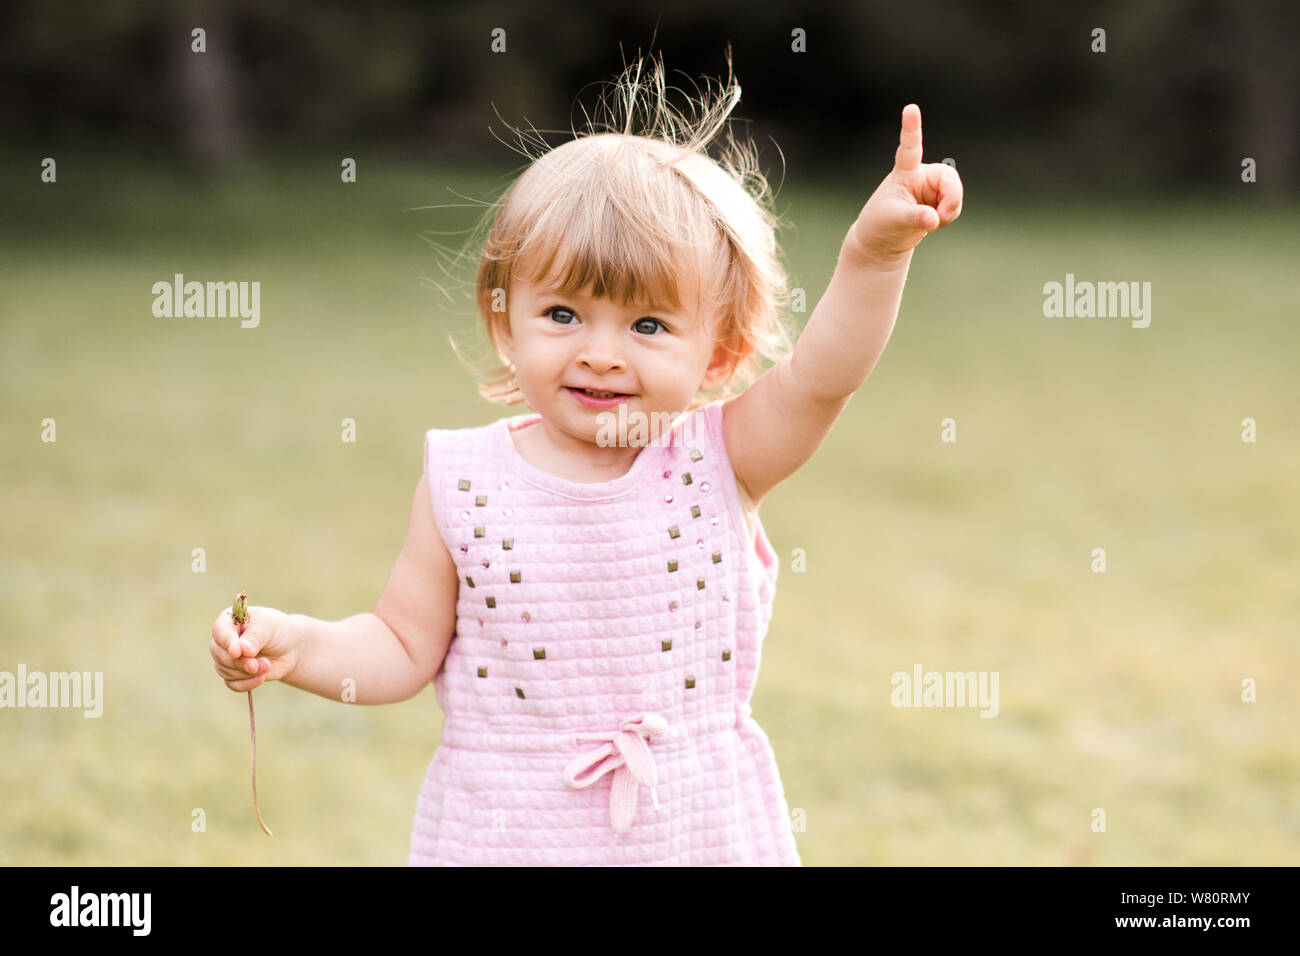 Joli Bebe Fille 1 2 Ans Montrant Quelque Chose Avec Le Doigt En Plein Air Libre L Enfance Le Bonheur Photo Stock Alamy